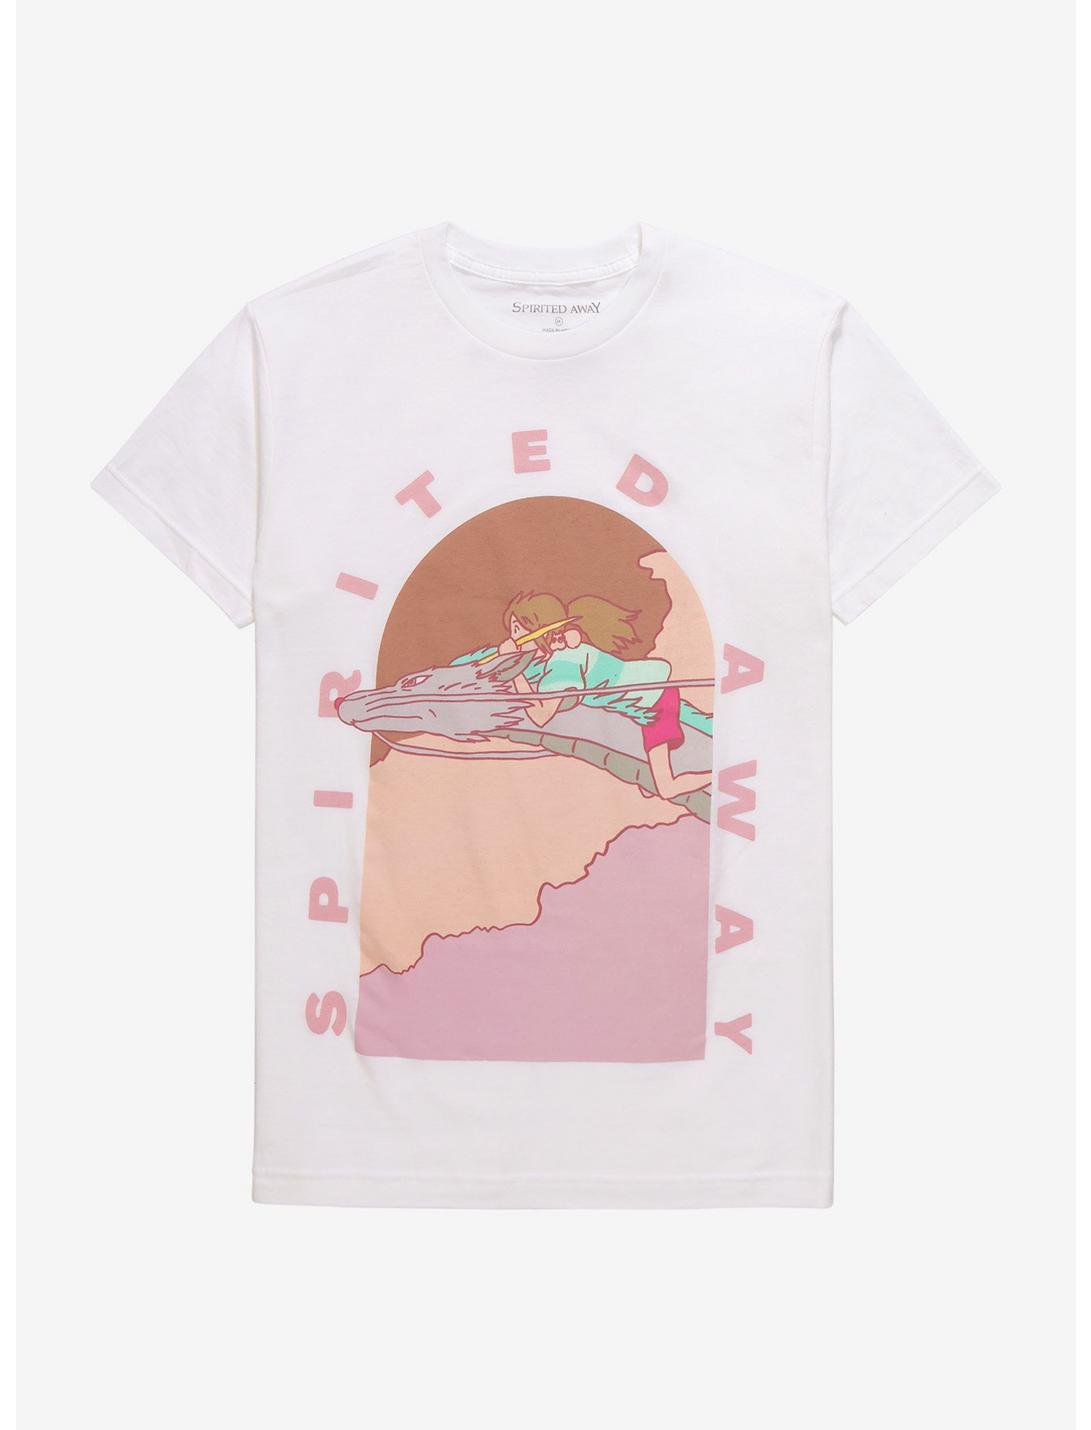 Studio Ghibli Spirited Away Chihiro & Haku Pastel Girls T-Shirt, MULTI, hi-res